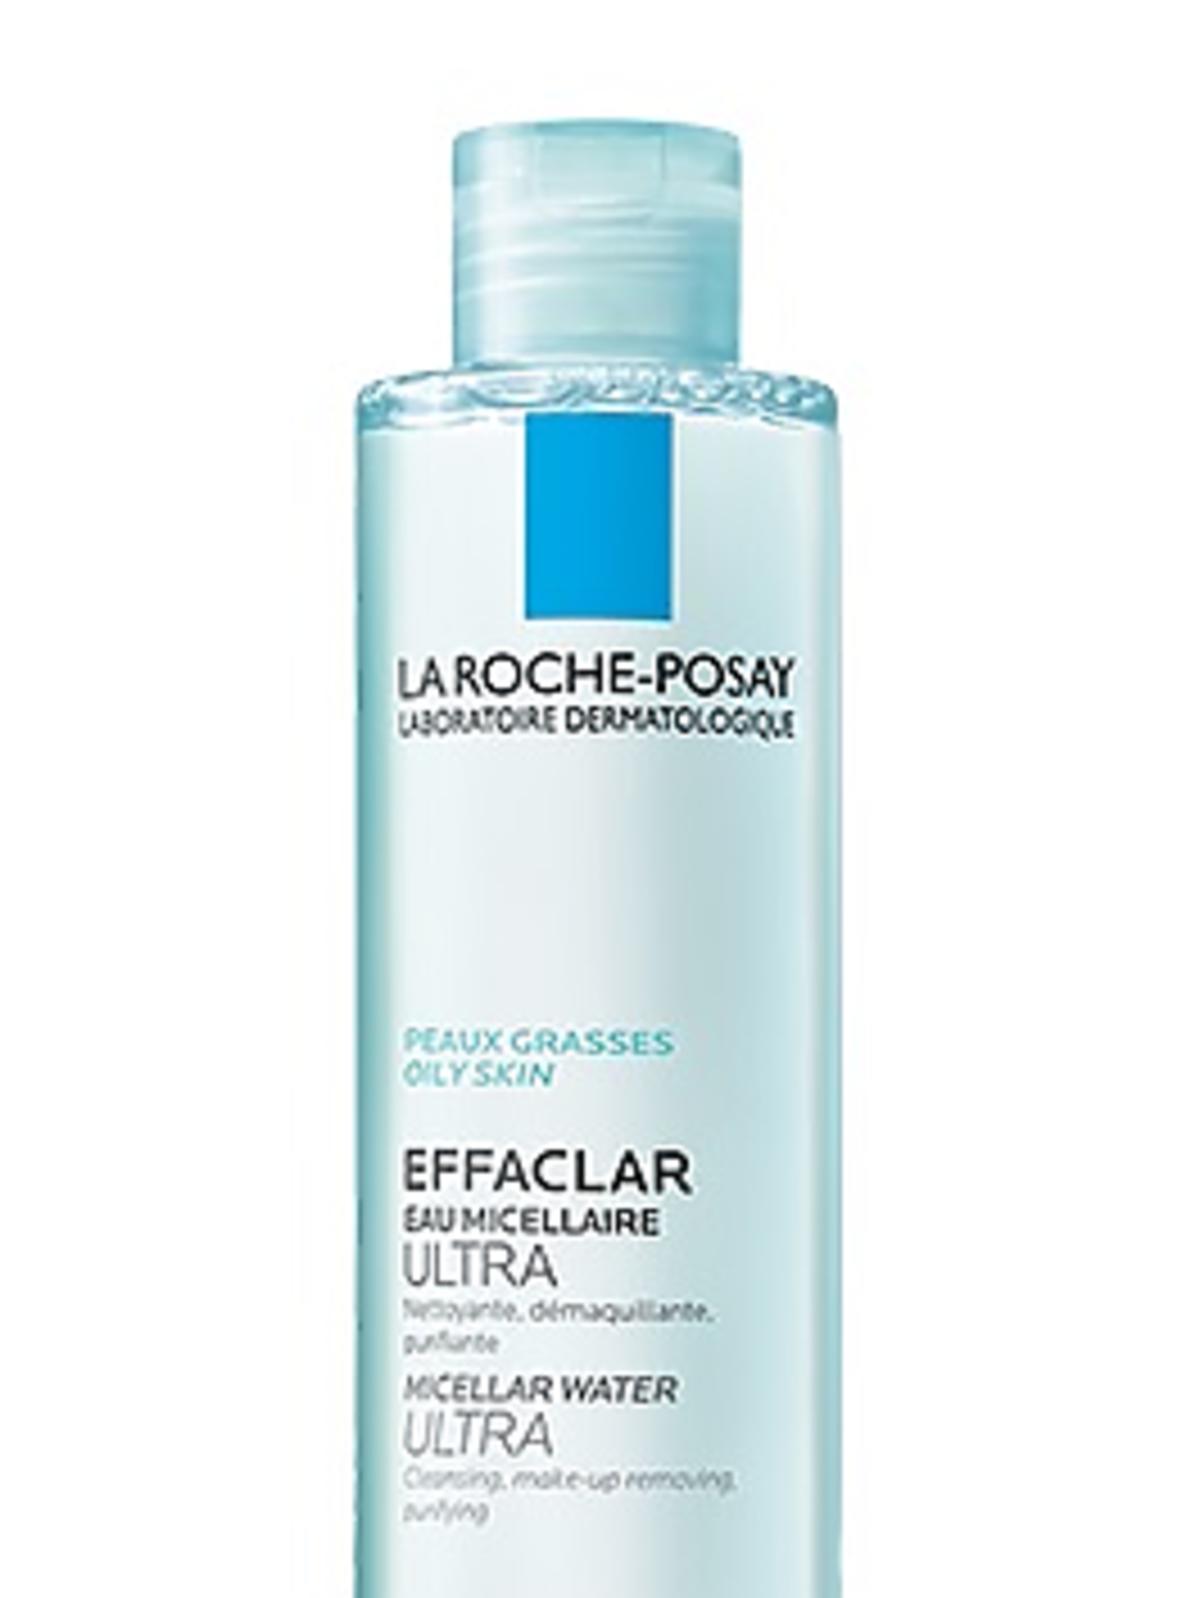 La Roche-Posay, ULTRA Micellar Water, Oczyszczający płyn micelarny do skóry tłustej i wrażliwej